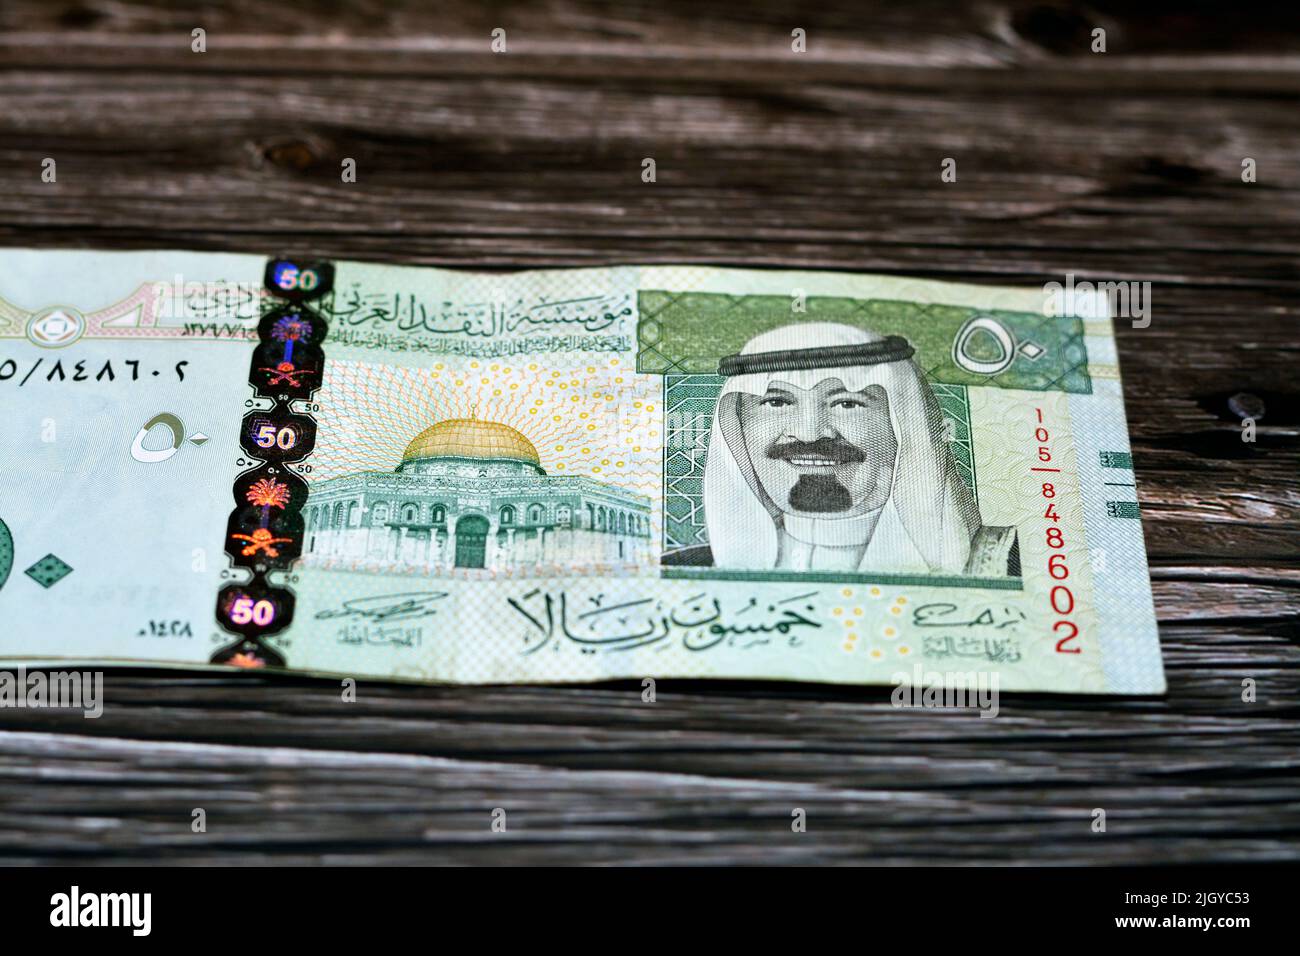 Pila DE ARABIA SAUDITA 50 SAR Cincuenta riyales sauditas billetes en  efectivo con la foto del rey Abdullah Bin Abdulaziz Al Saud y la Cúpula de  la Roca iso Fotografía de stock -